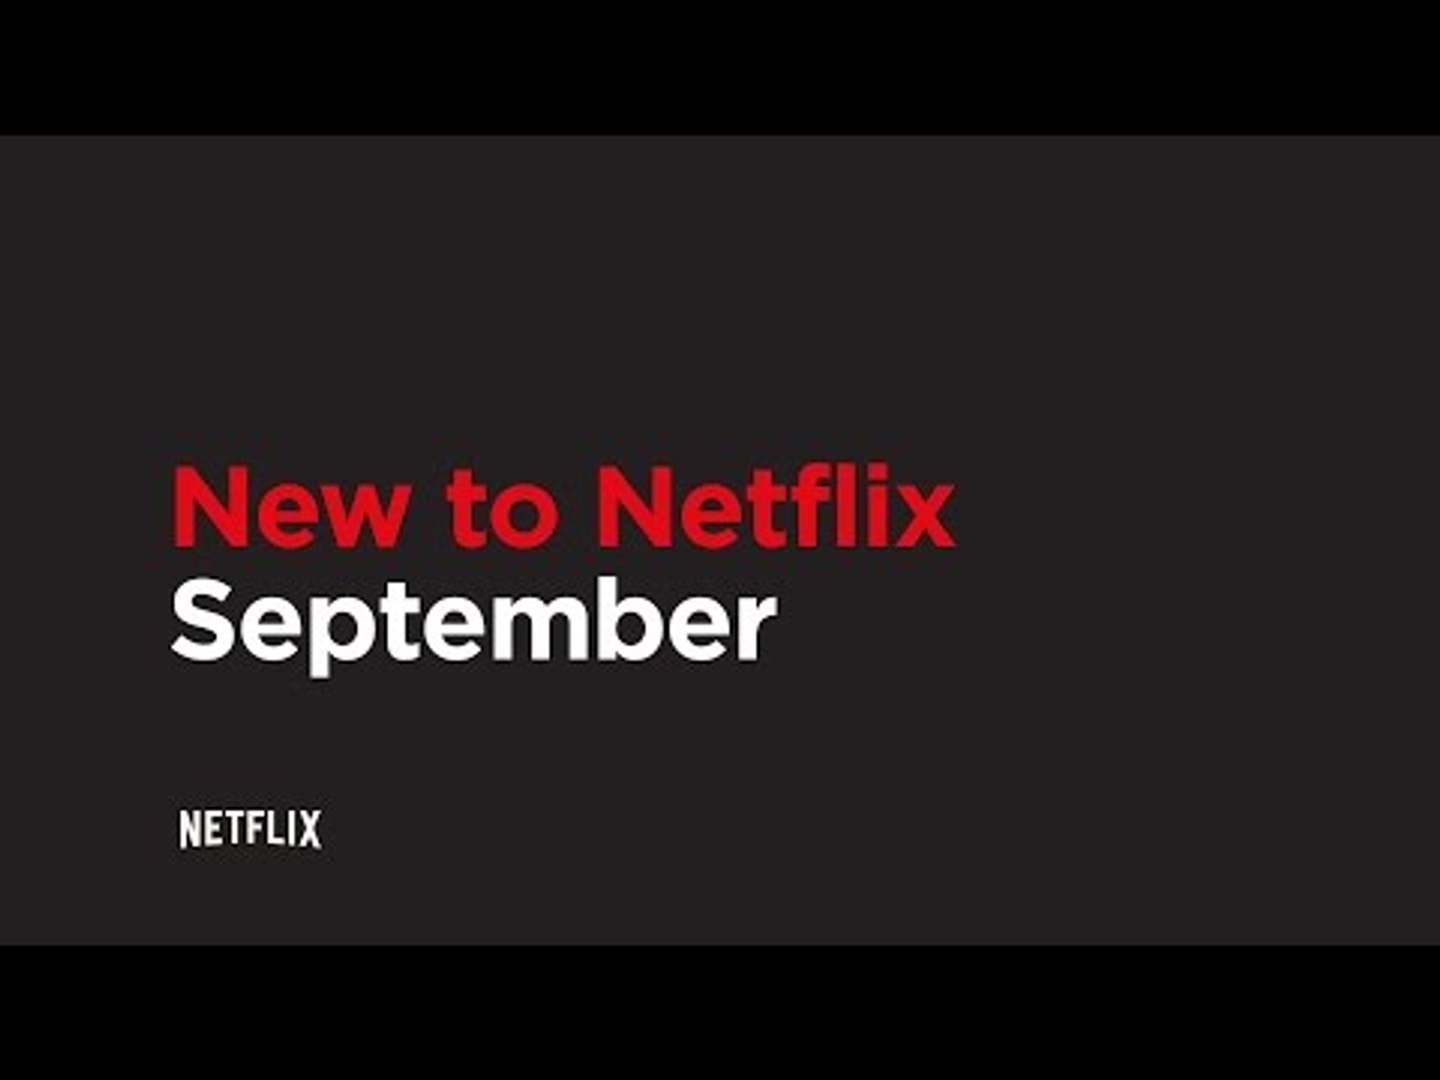 New to Netflix | September 2016 | Netflix